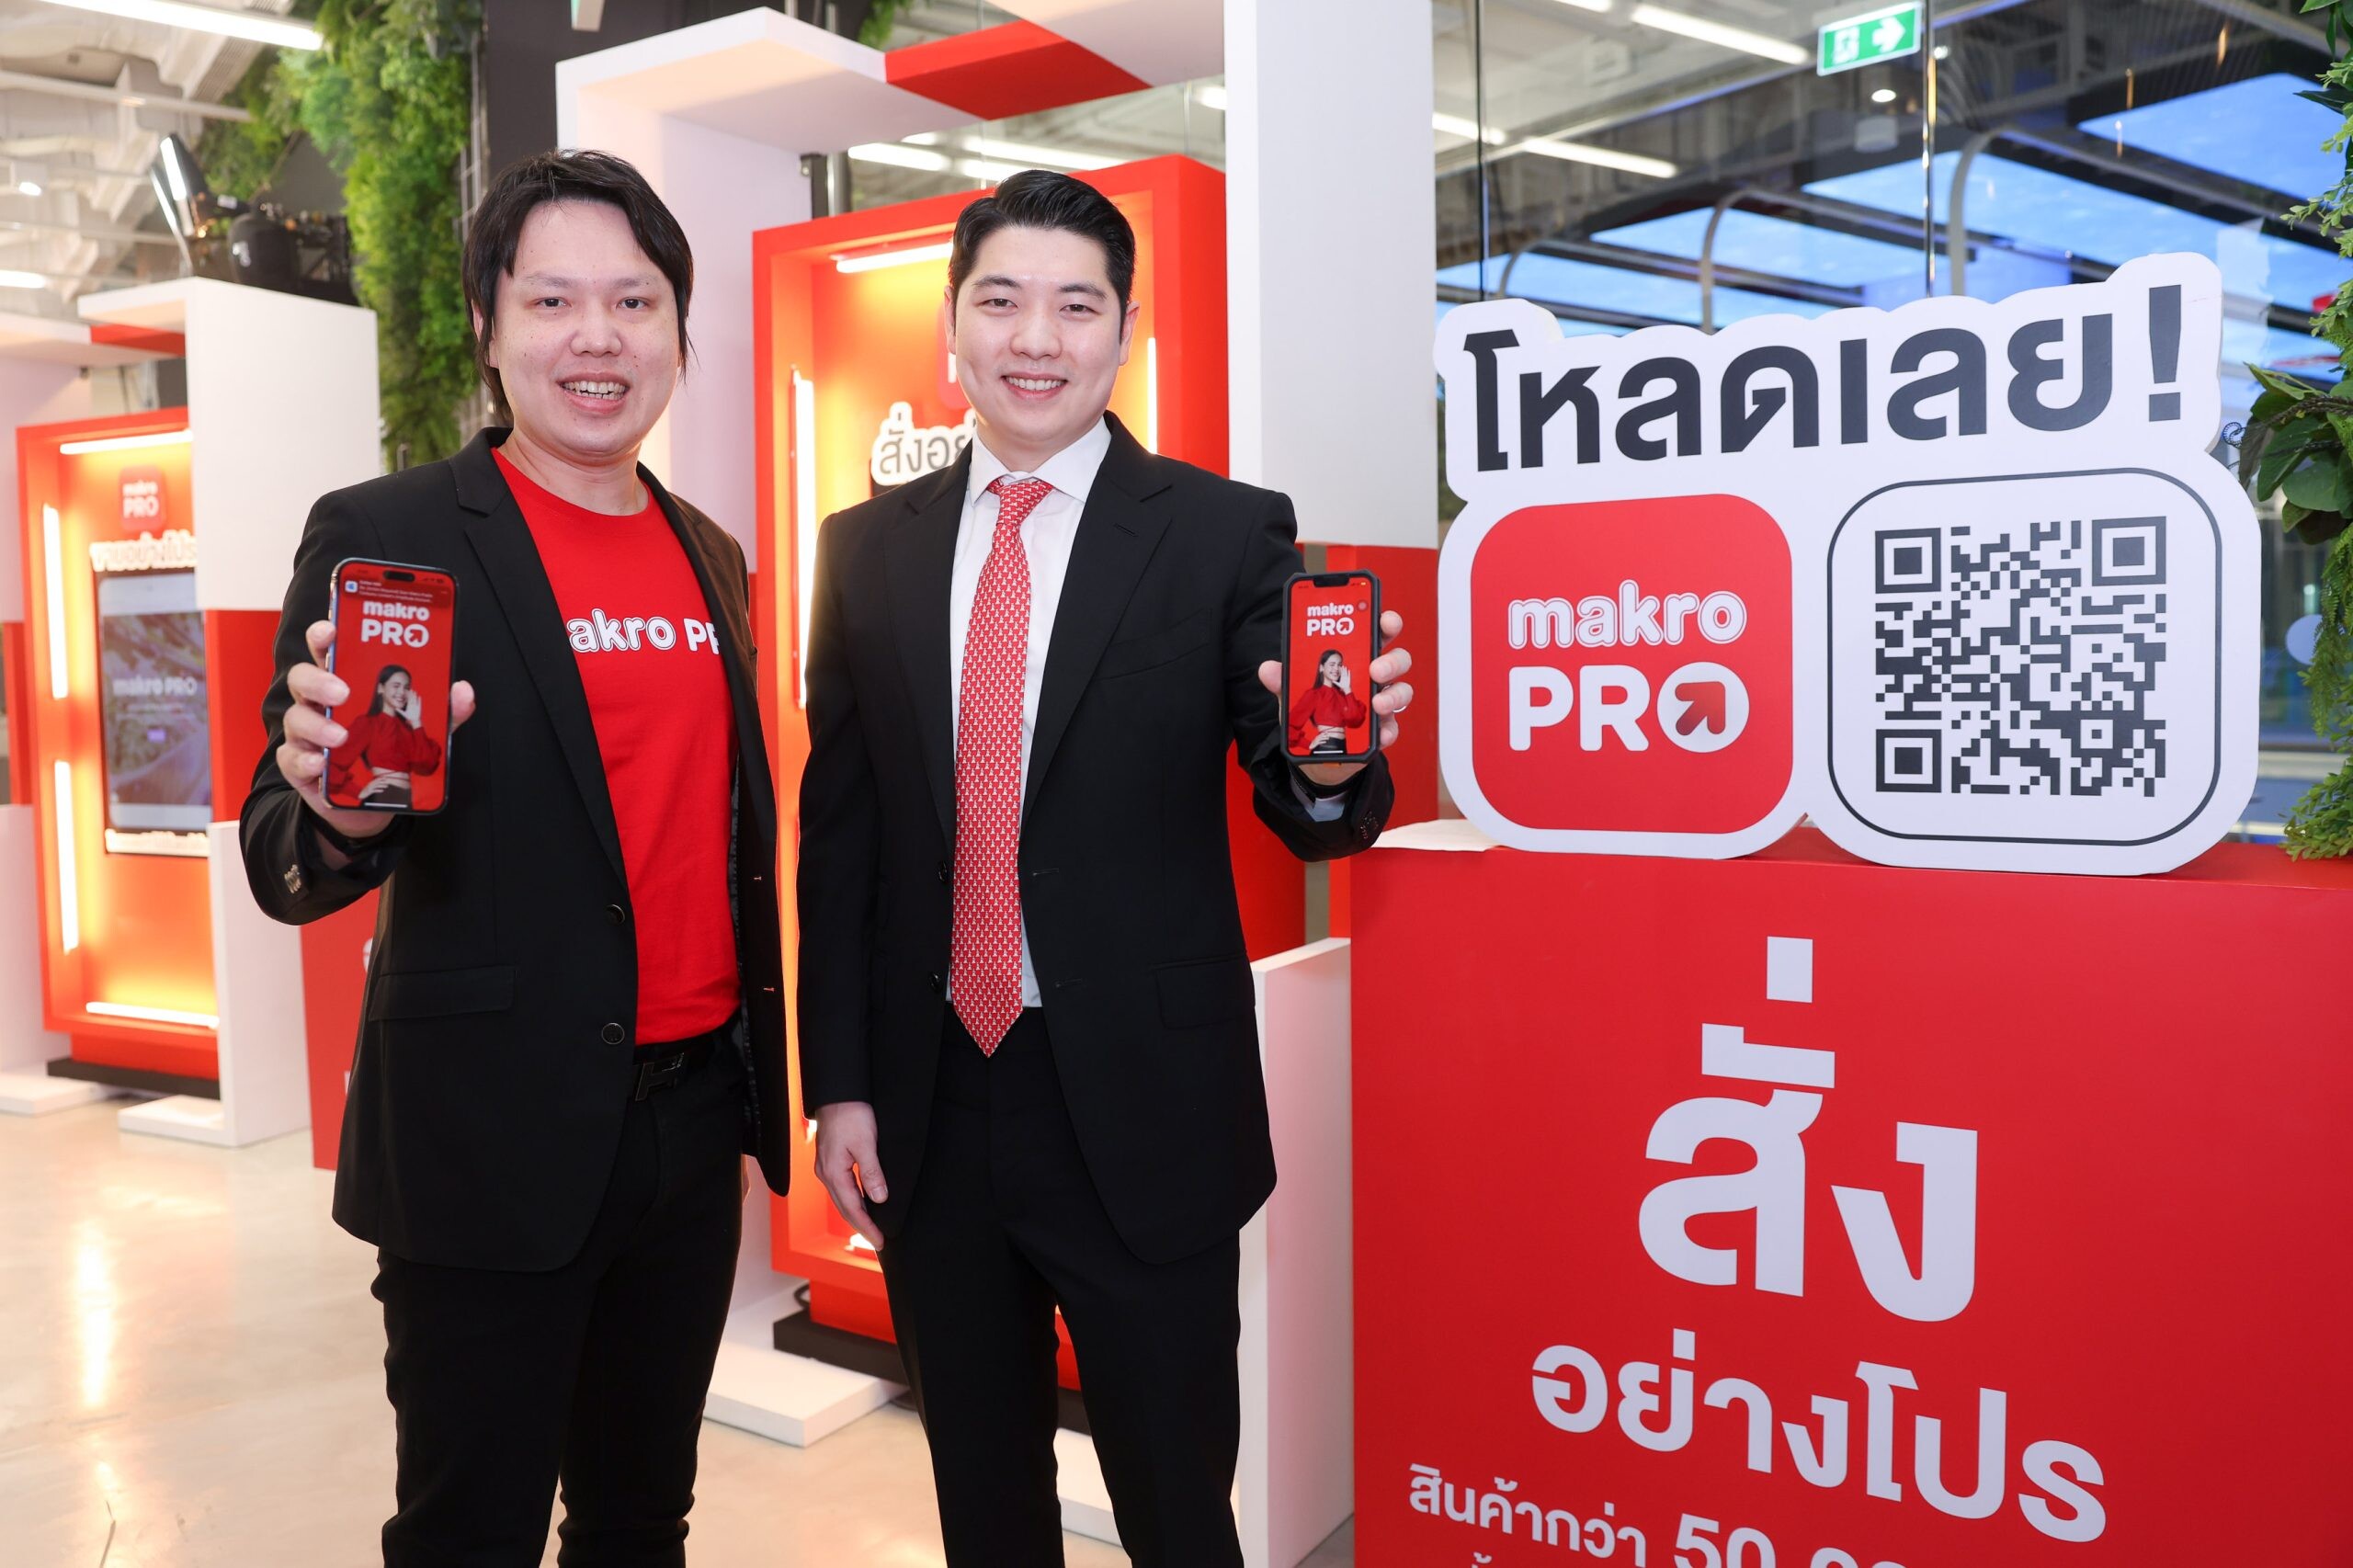 แม็คโคร พลิกโฉมธุรกิจ มุ่งสู่ผู้นำค้าส่งออมนิแชนแนลของไทย เปิดตัวยิ่งใหญ่ "Makro PRO" สั่ง ขาย คุ้ม อย่างโปรในแอปเดียว